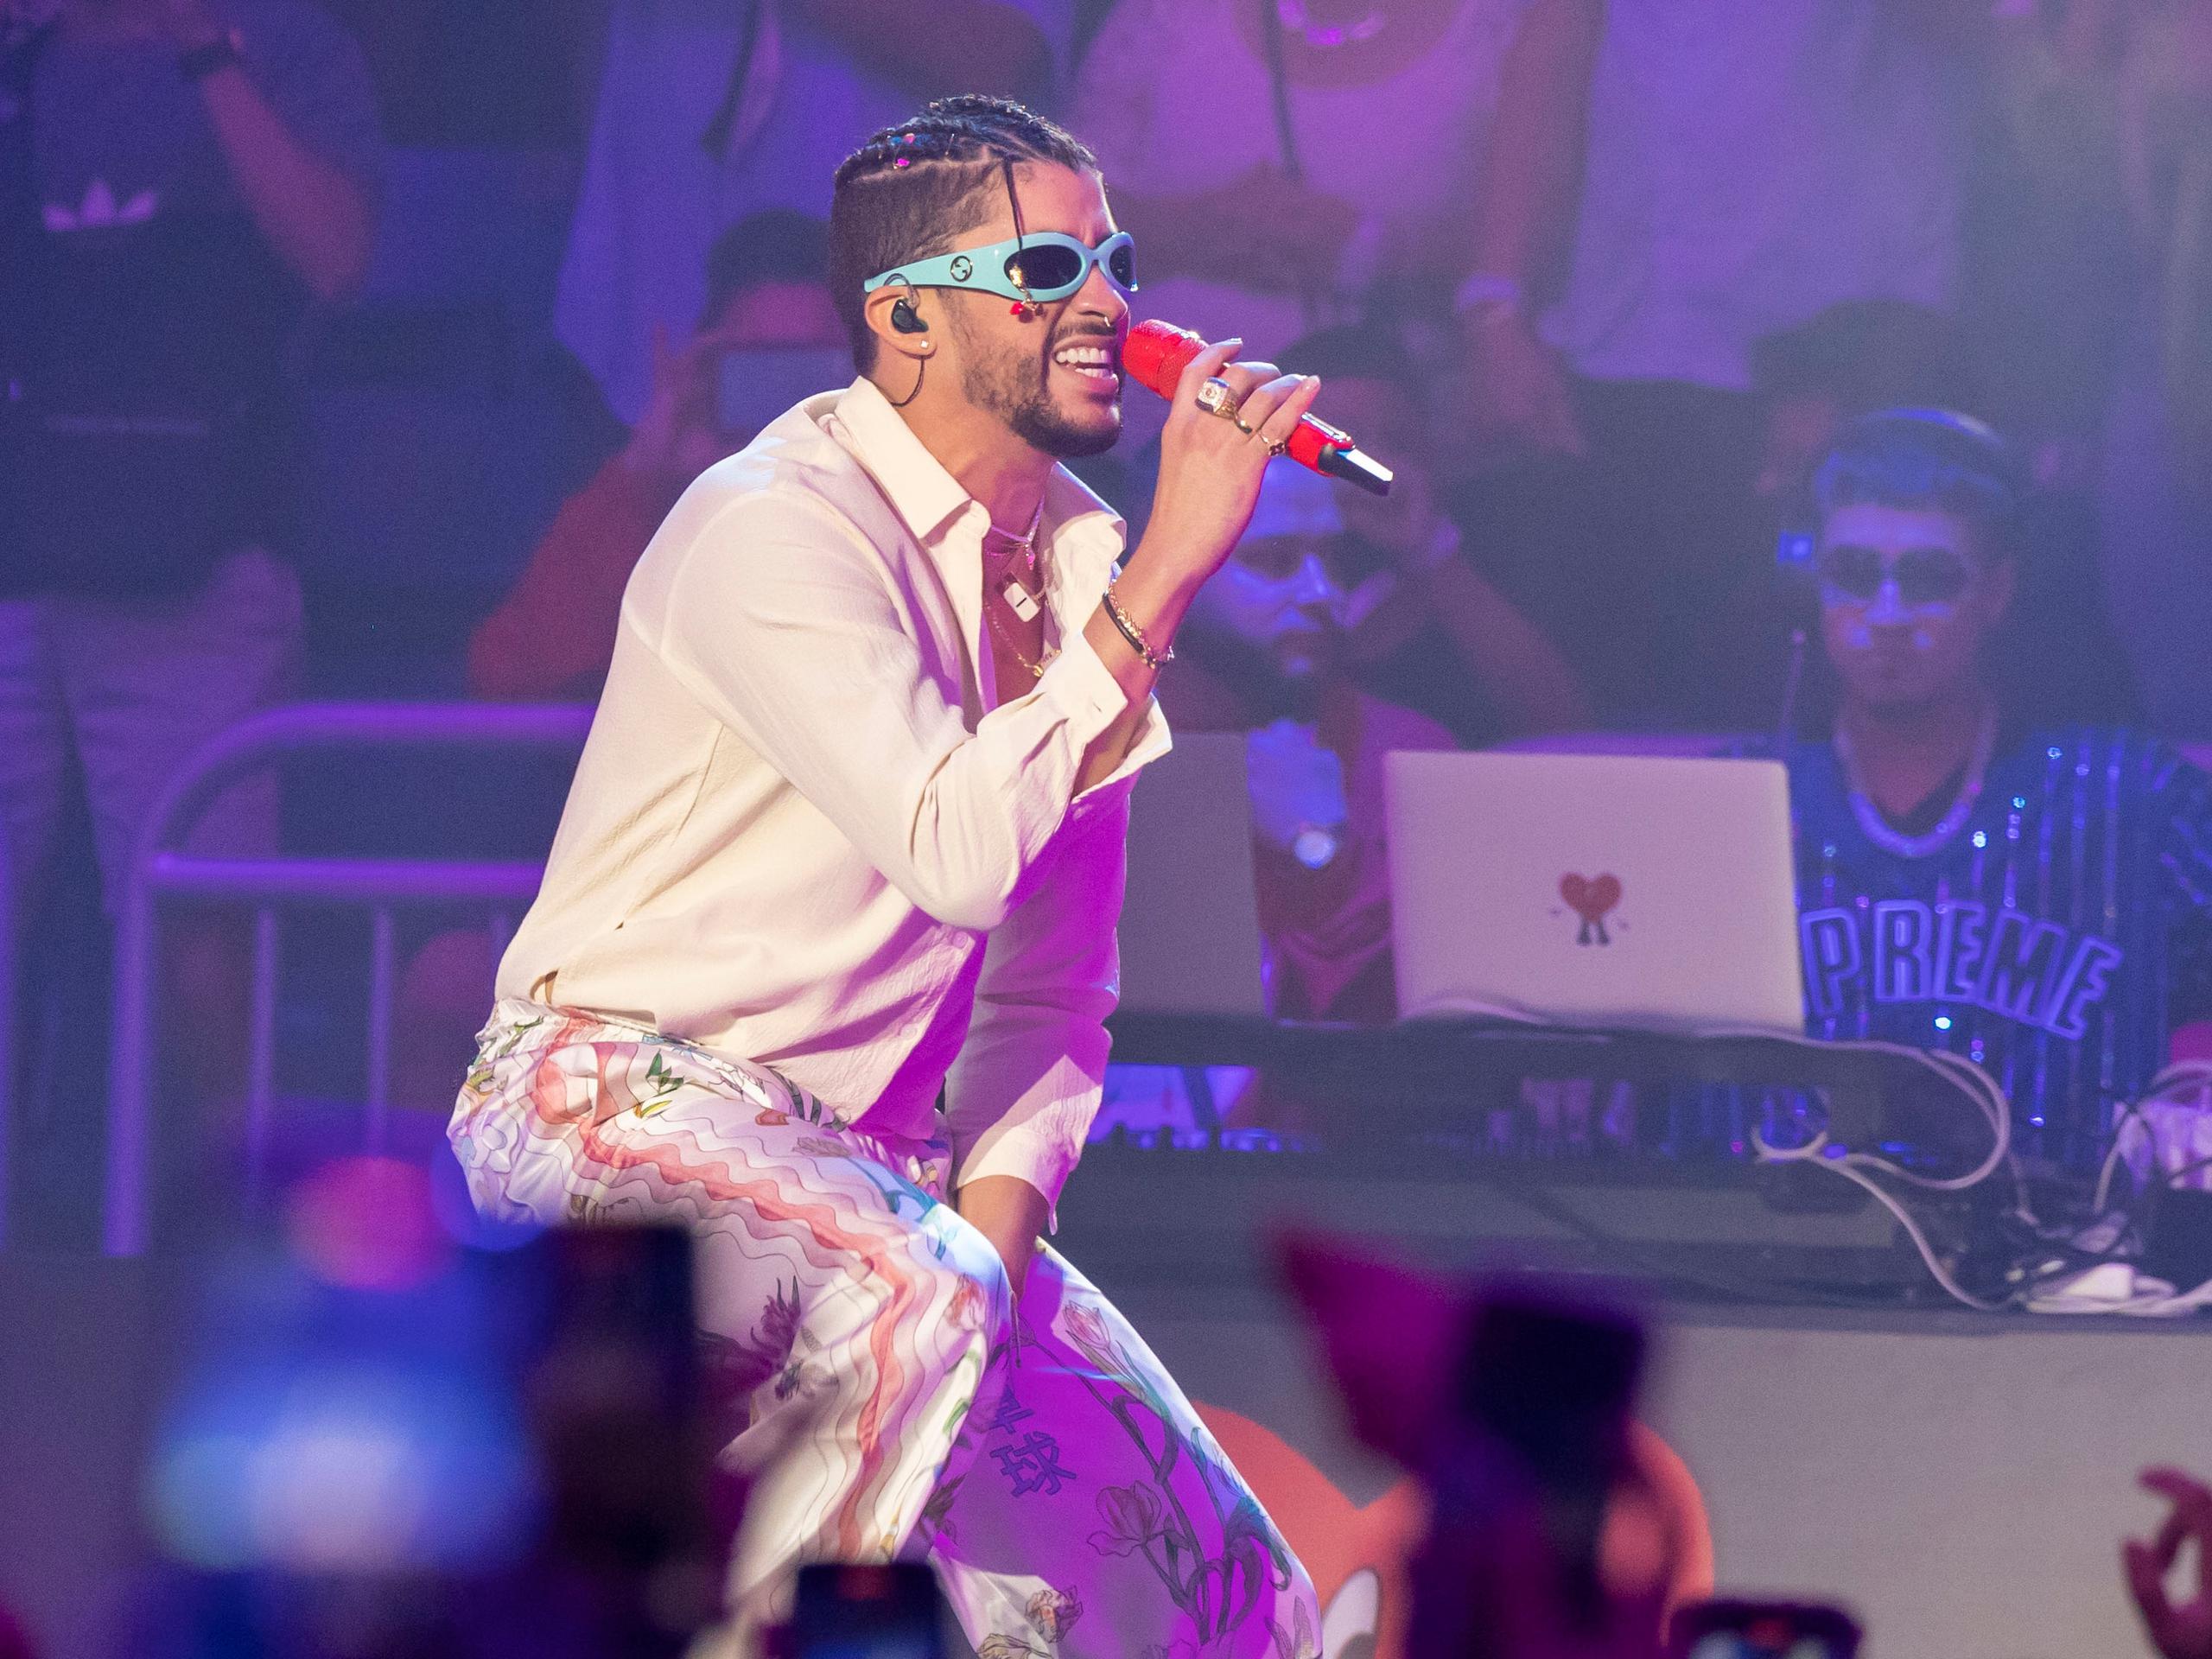 El cantante Bad Bunny se presentó por tres noches consecutivas en el Coliseo de Puerto Rico en su concierto "Un verano sin ti".